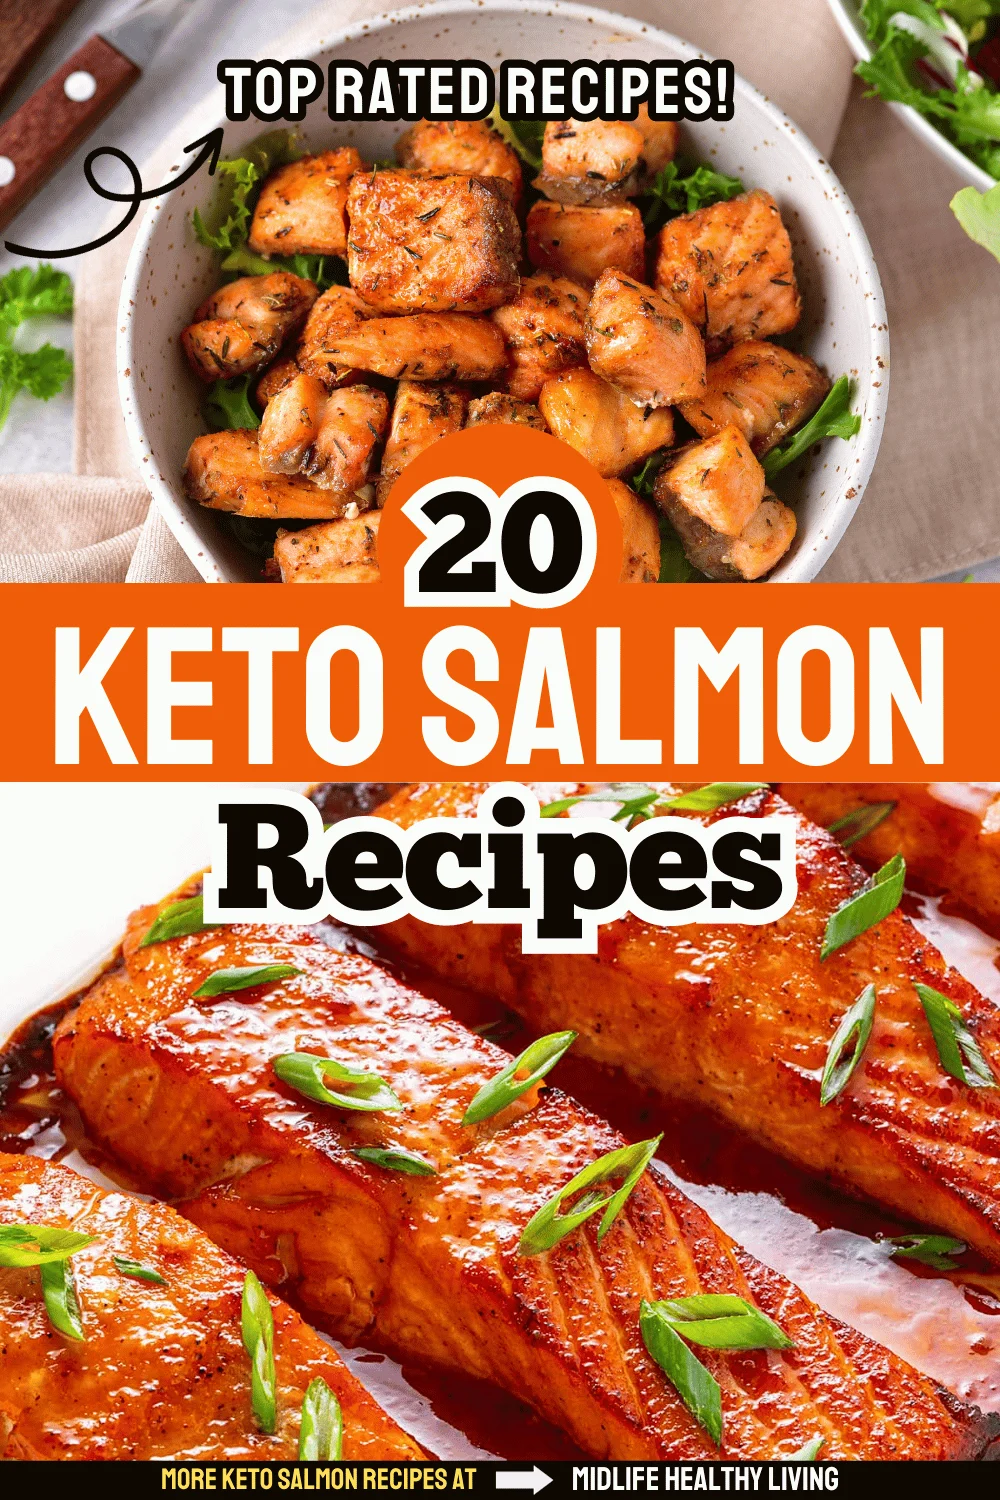 keto salmon recipes to try now